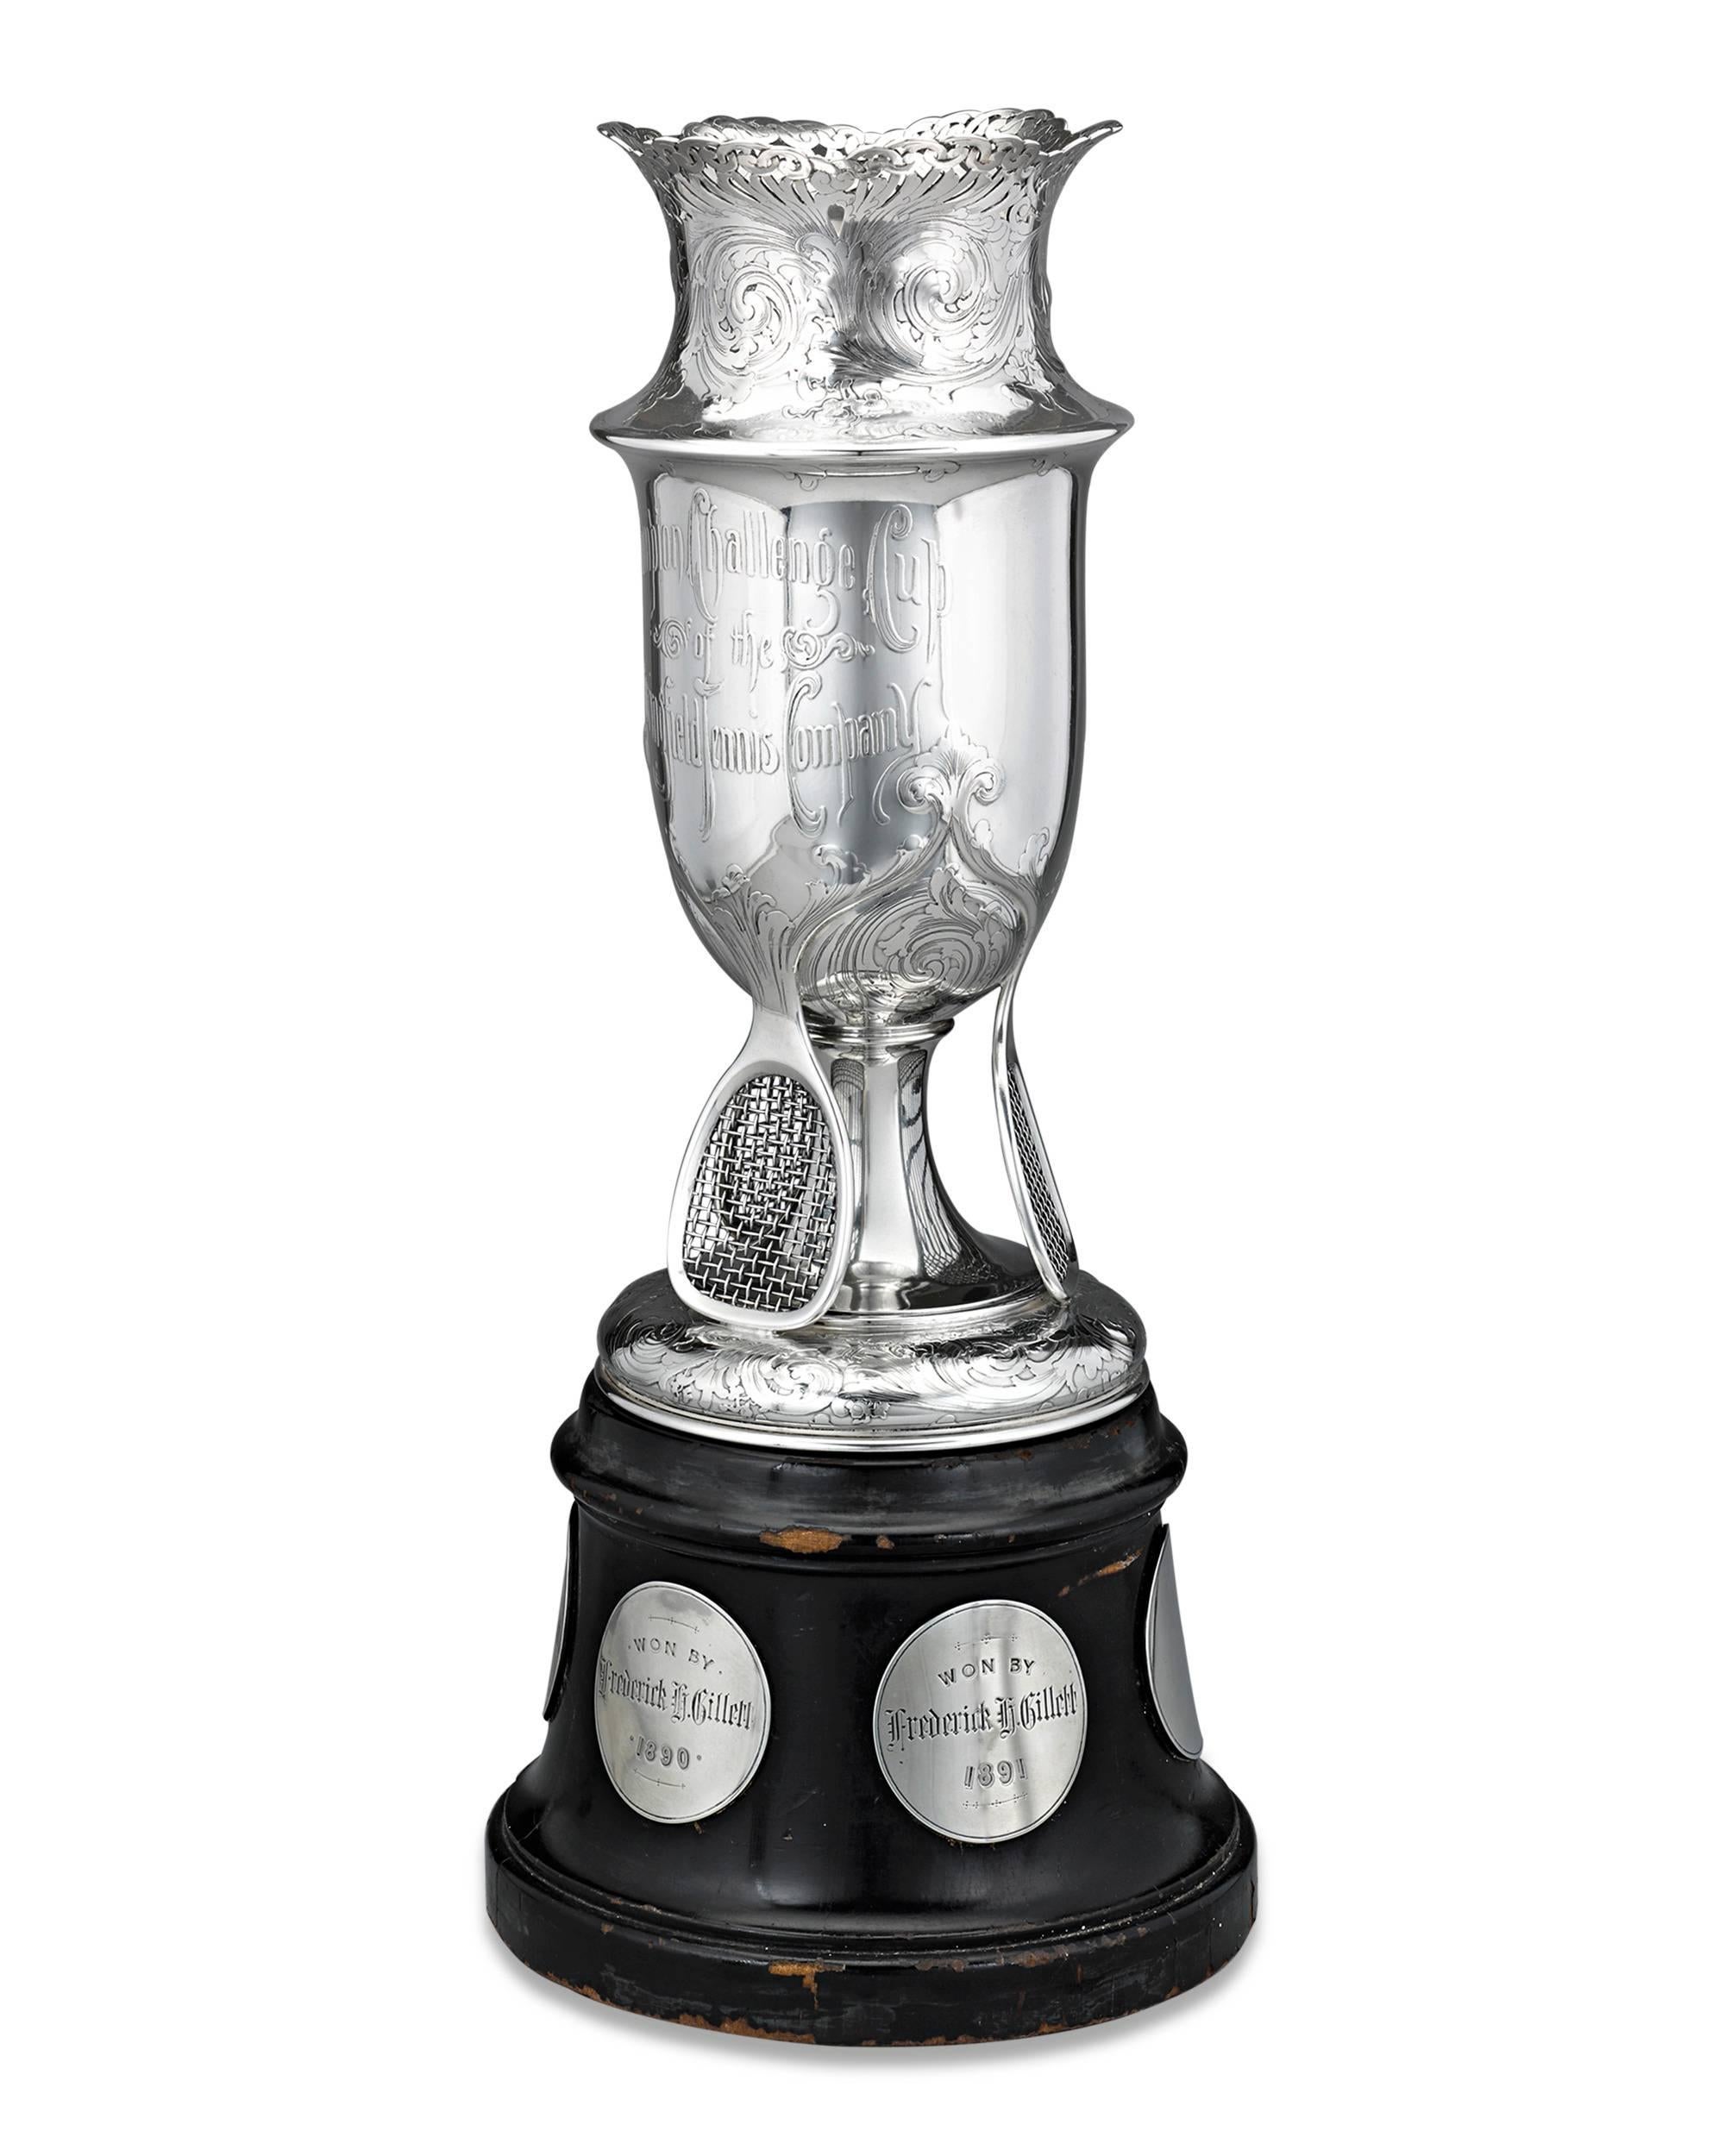 19th Century Tiffany & Co. Silver Tennis Trophy